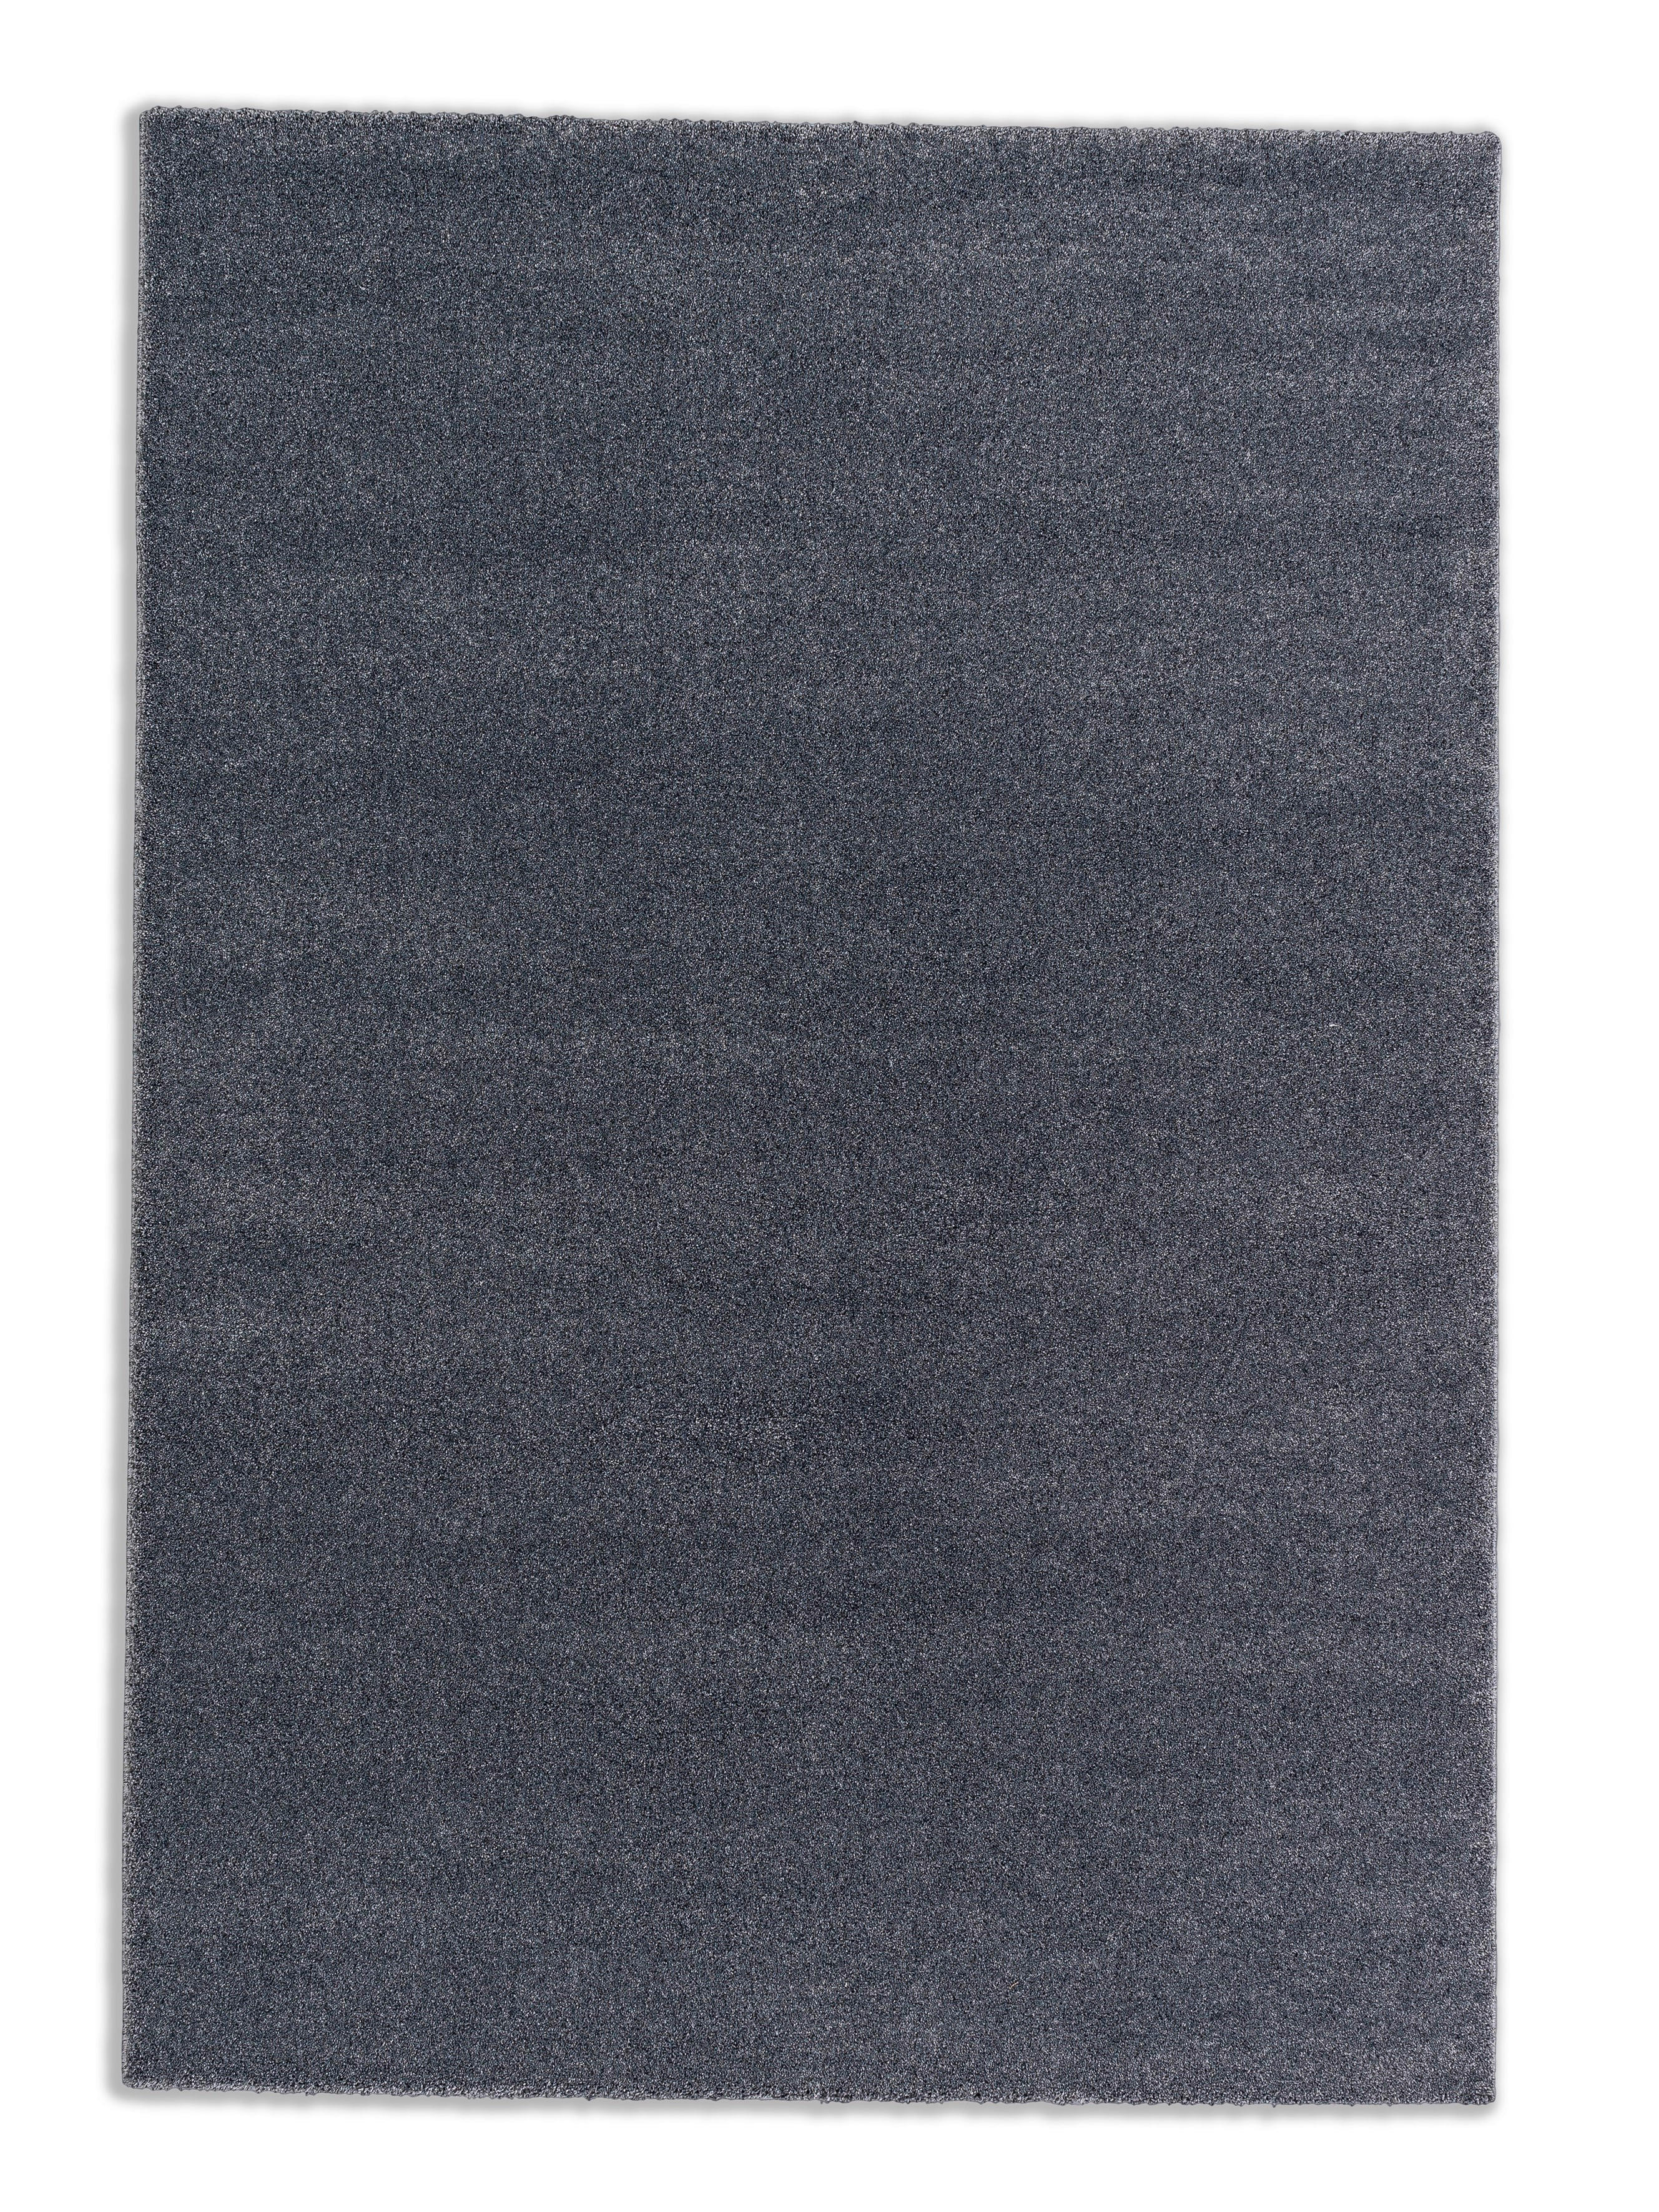 HOCHFLORTEPPICH 67/130 cm Pure  - Anthrazit, Basics, Textil (67/130cm) - Schöner Wohnen